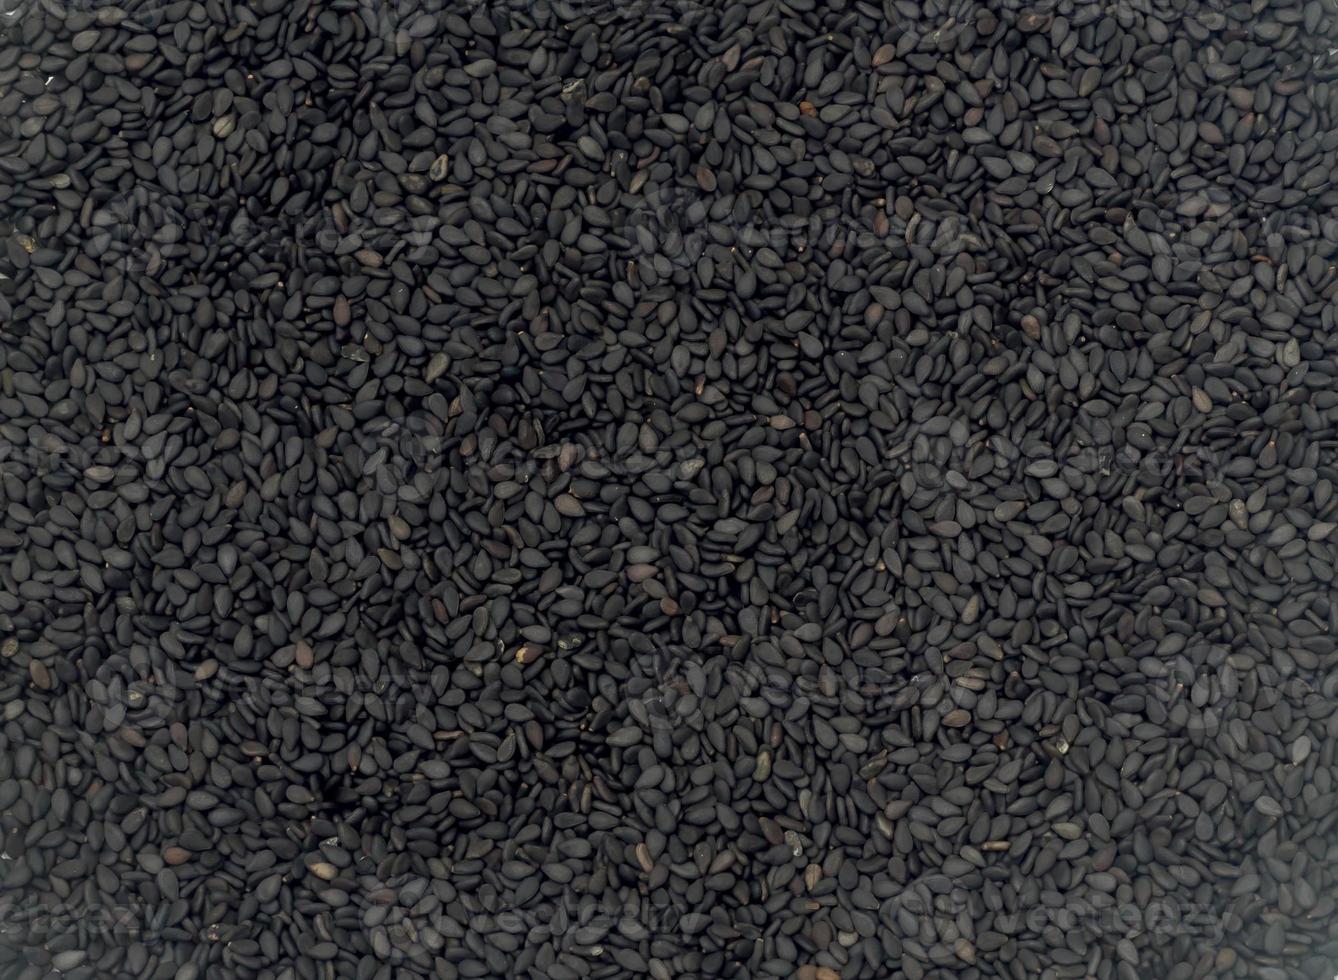 graines de sésame noires ou foncées ou tuiles utilisées pour la texture de fond des plantes, graines de plantes nutritives à extraire dans l'huile de cuisson photo